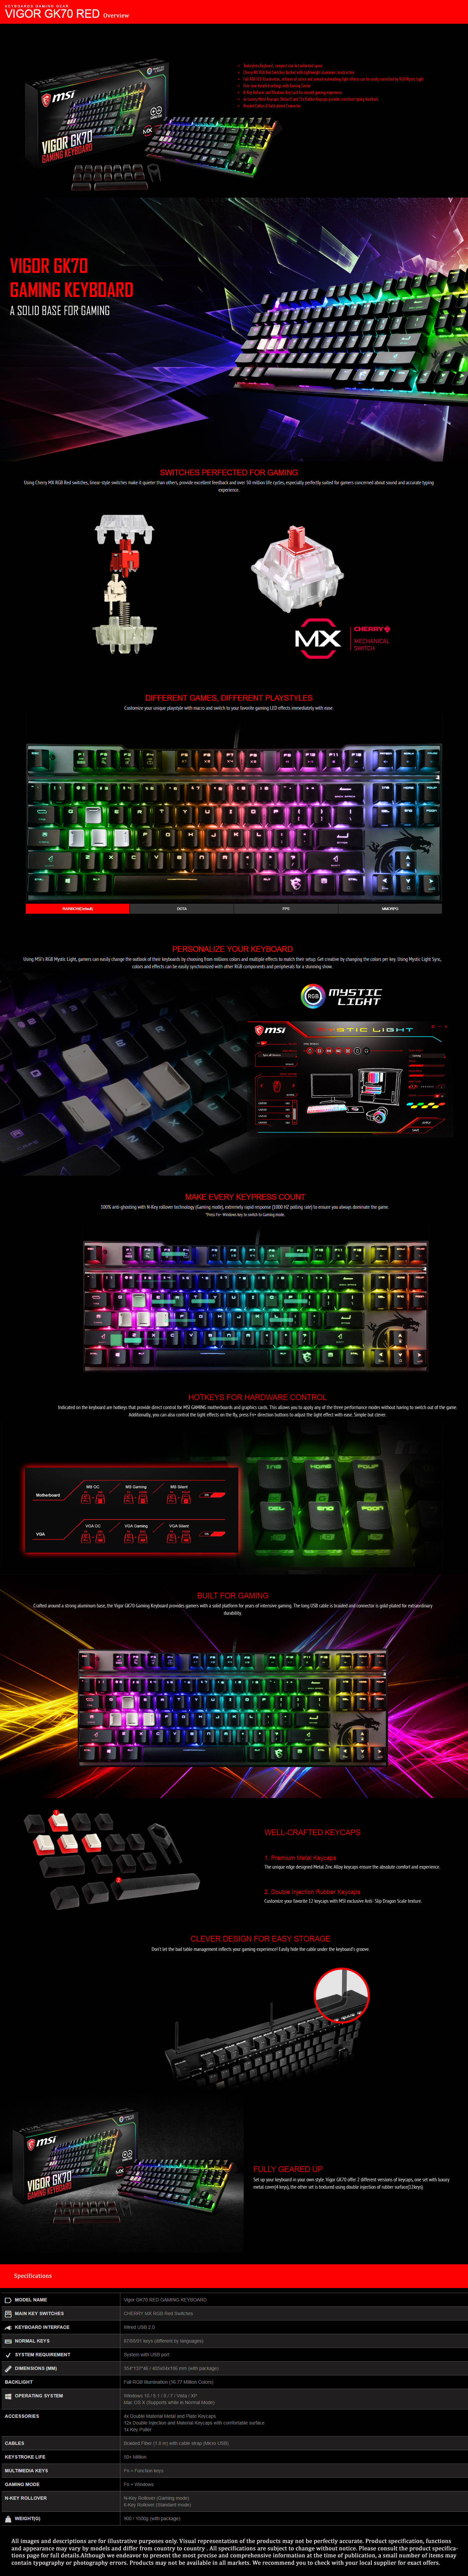  Buy Online MSI VIGOR GK70 RED Gaming Keyboard